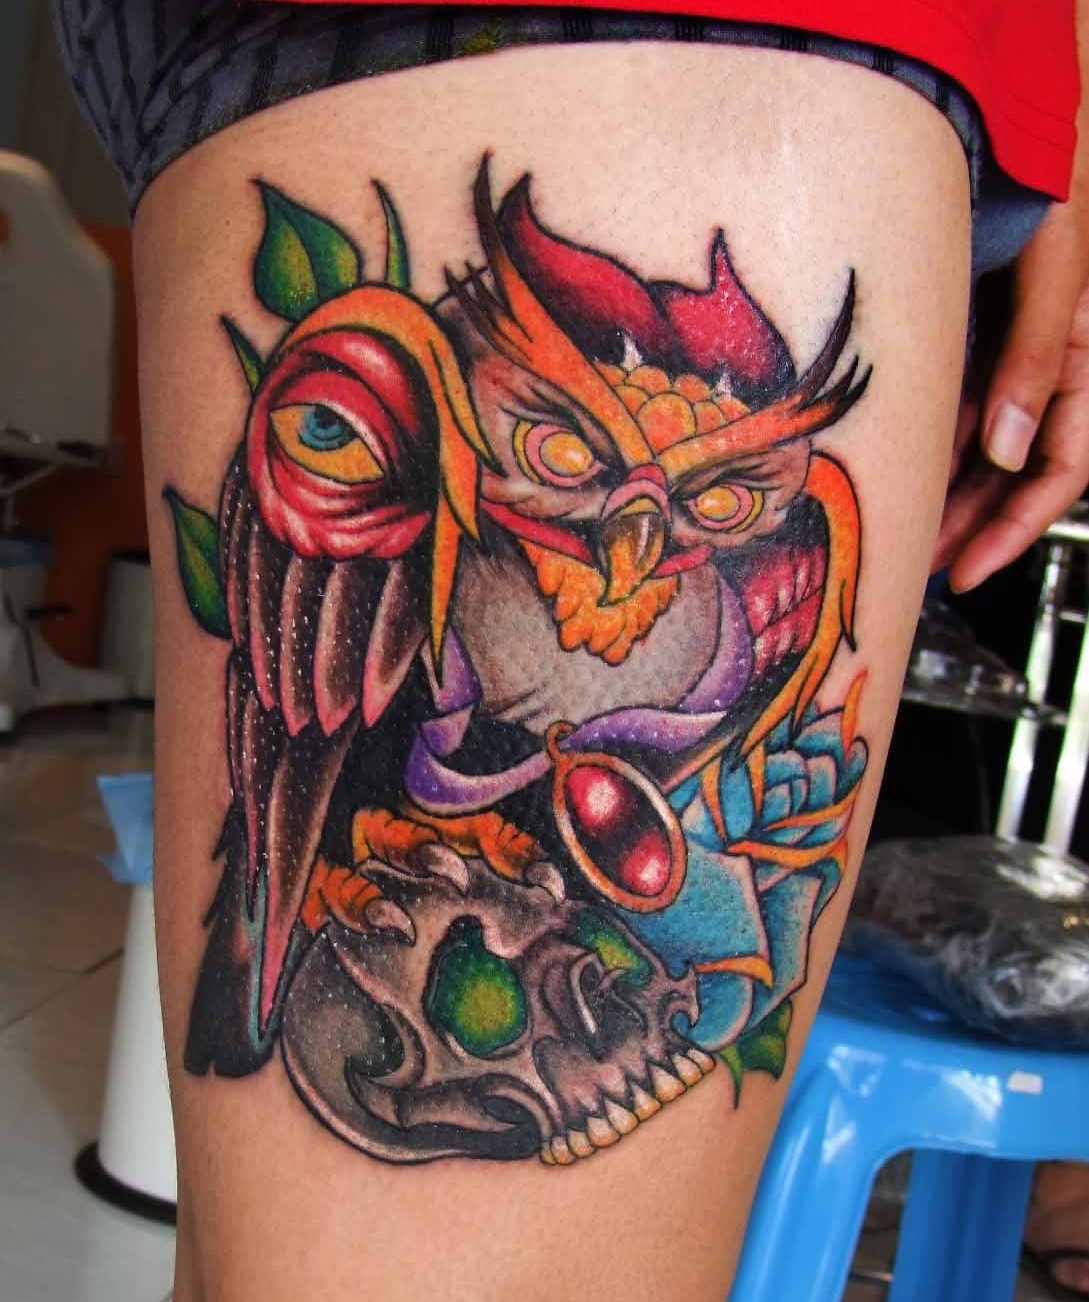 A tatuagem no estilo oldschool no quadril cara - de- coruja e o crânio